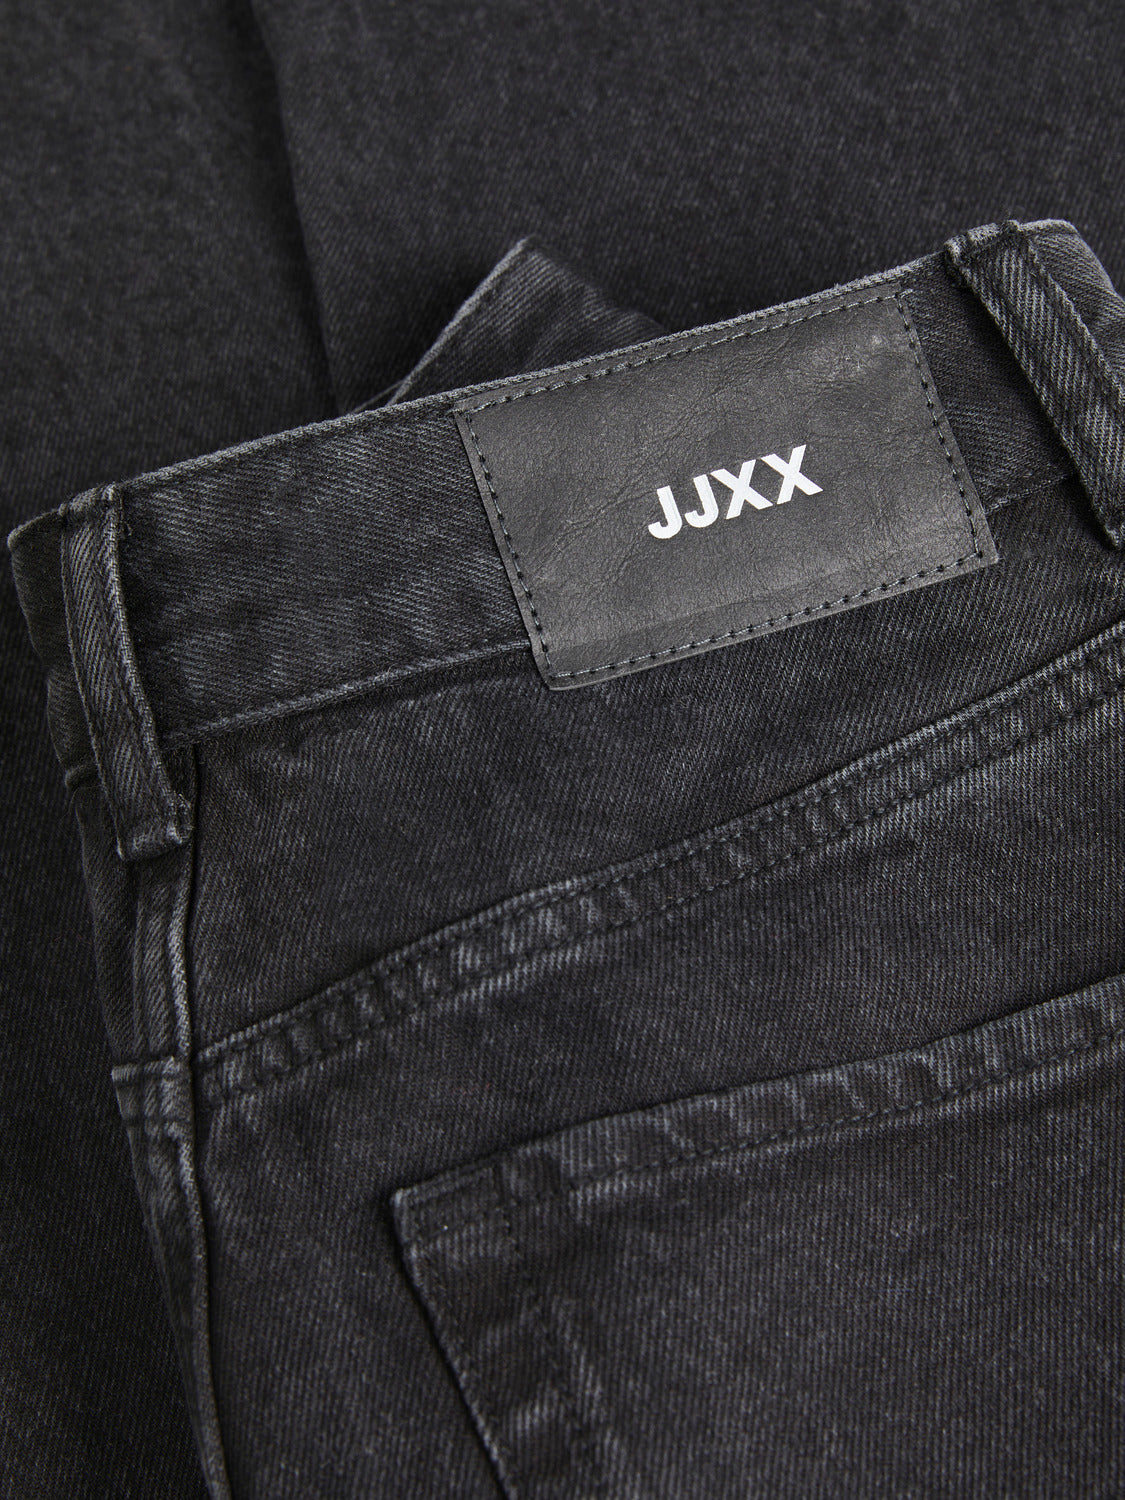 JXTOKYO Jeans - Black Denim